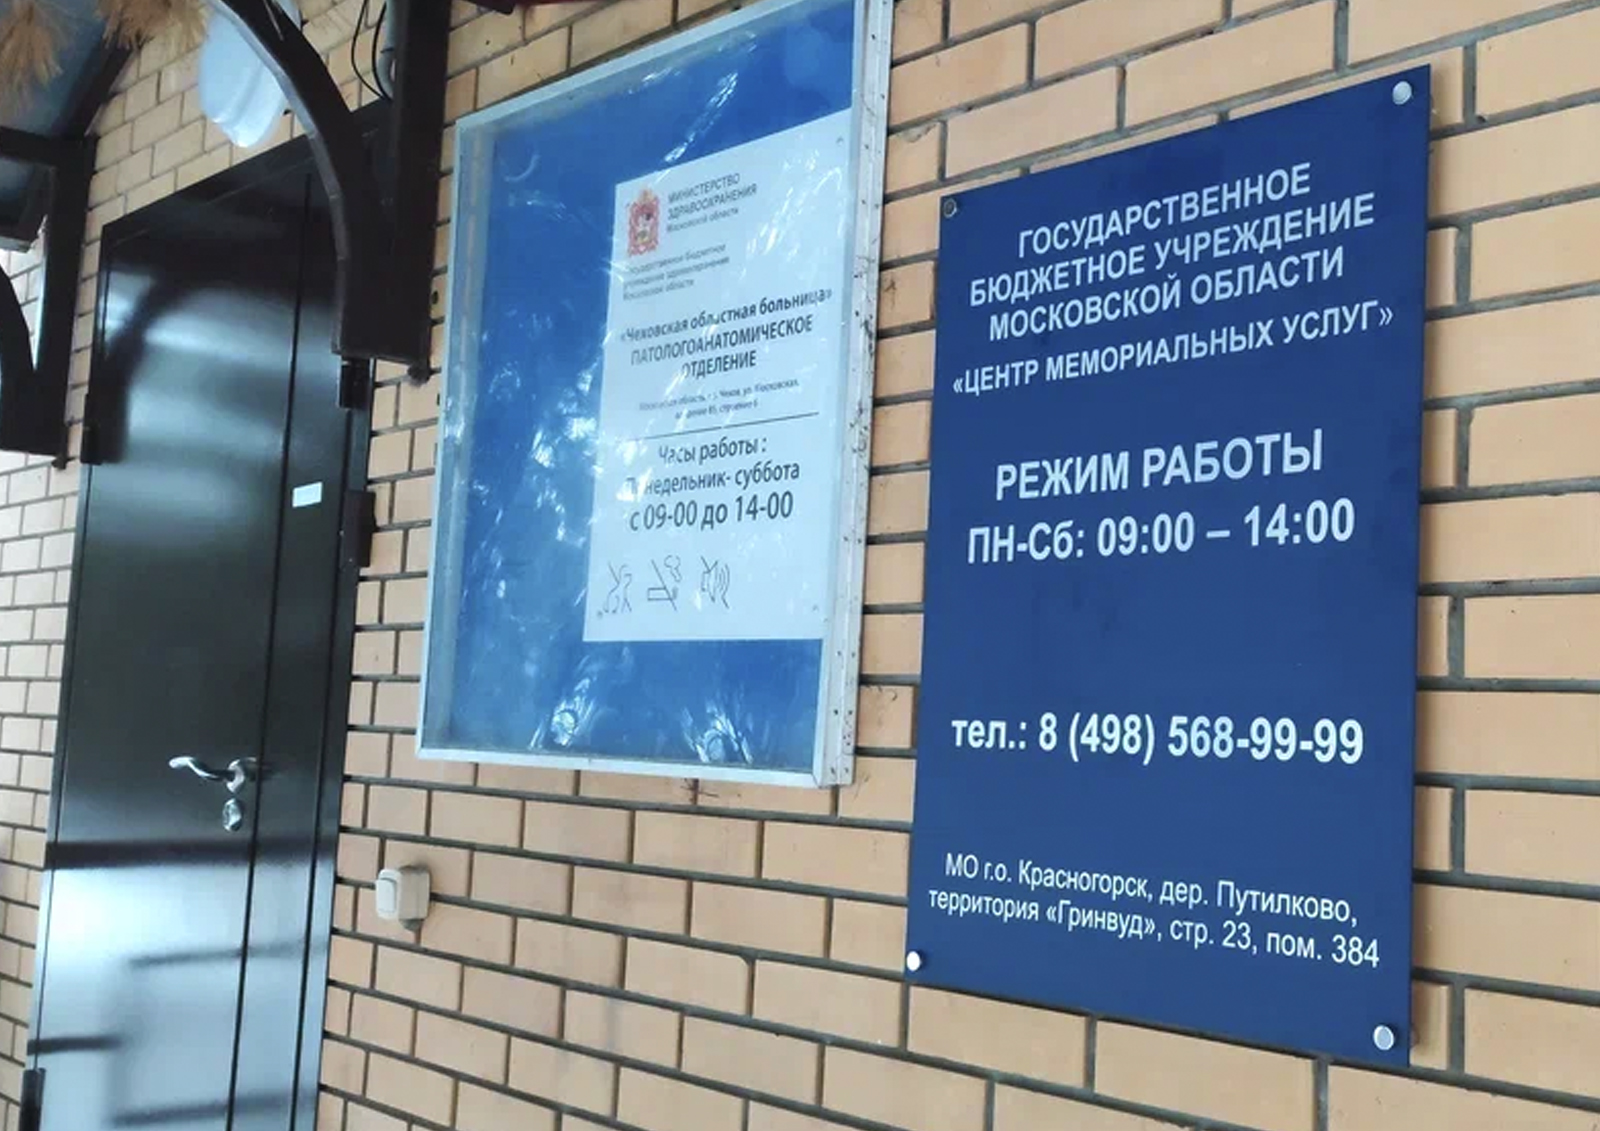 ГБУ МО Центр мемориальных услуг» открыло пункт в Чехове